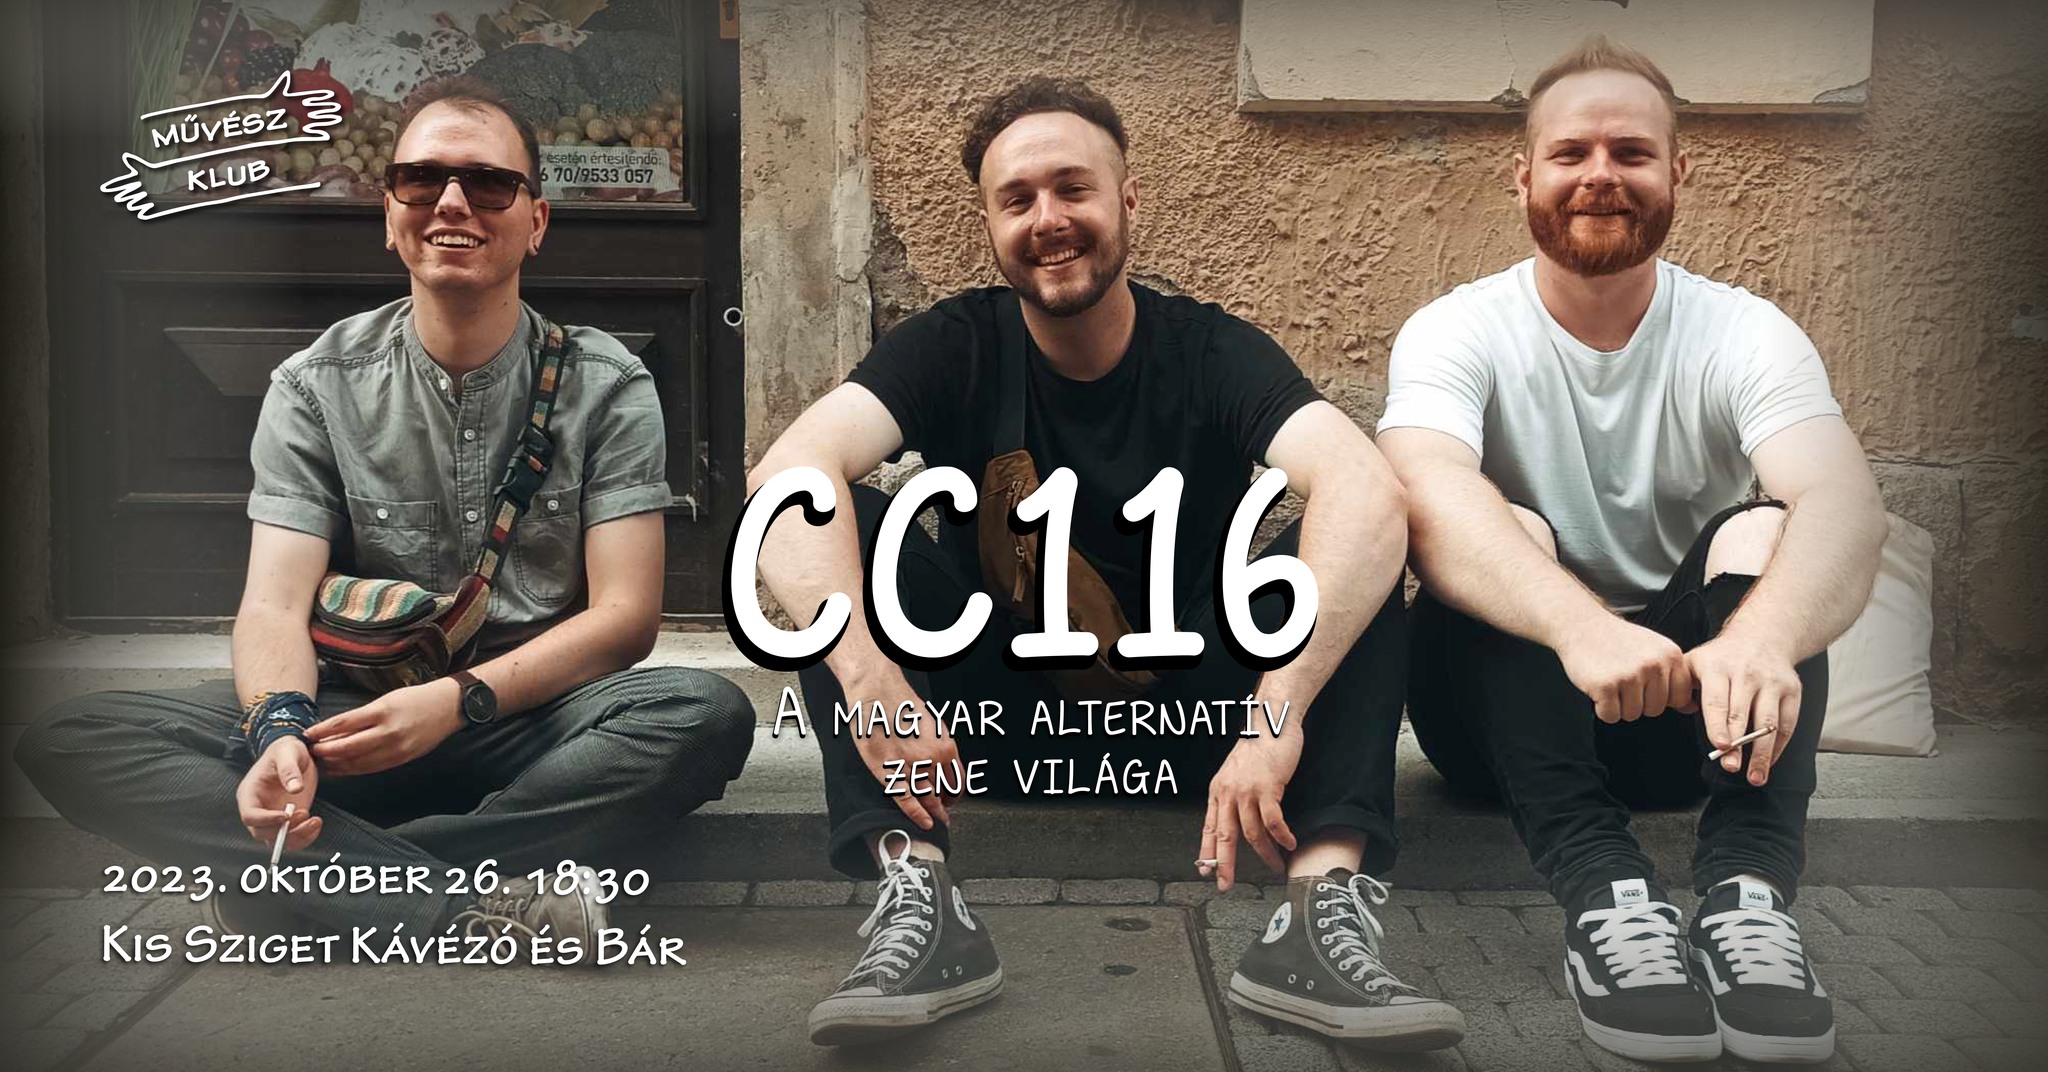 CC116 – A magyar alternatív zene világa